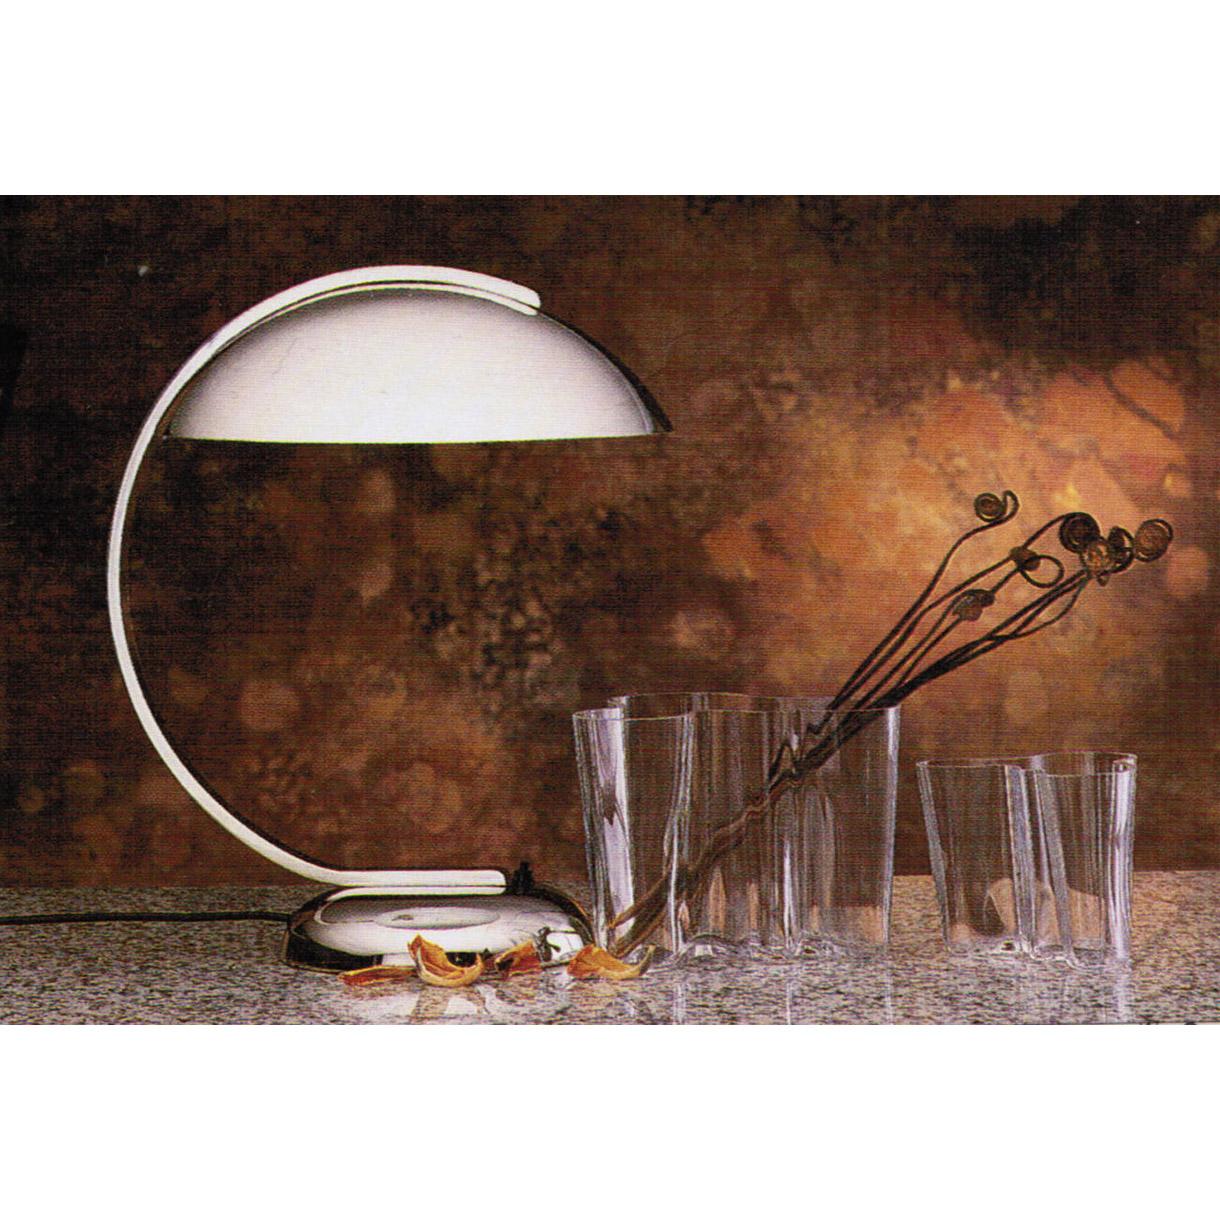 Austrian Bauhaus Art Deco Style Desk Lamp, Table Lamp, Re Editon For Sale